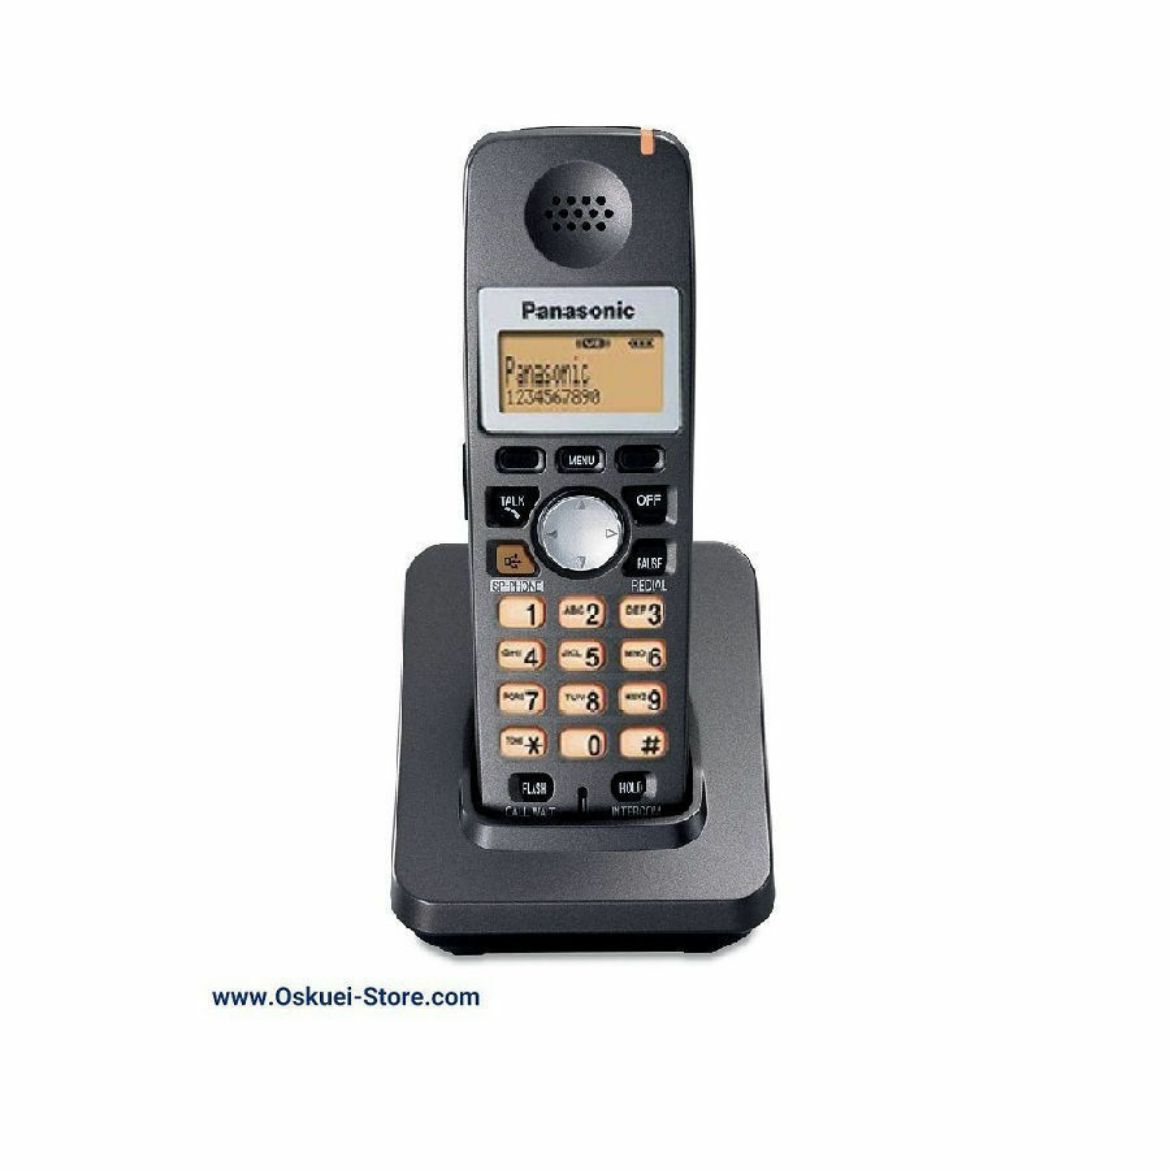 Panasonic KX-TGA351 Cordless Telephone Black